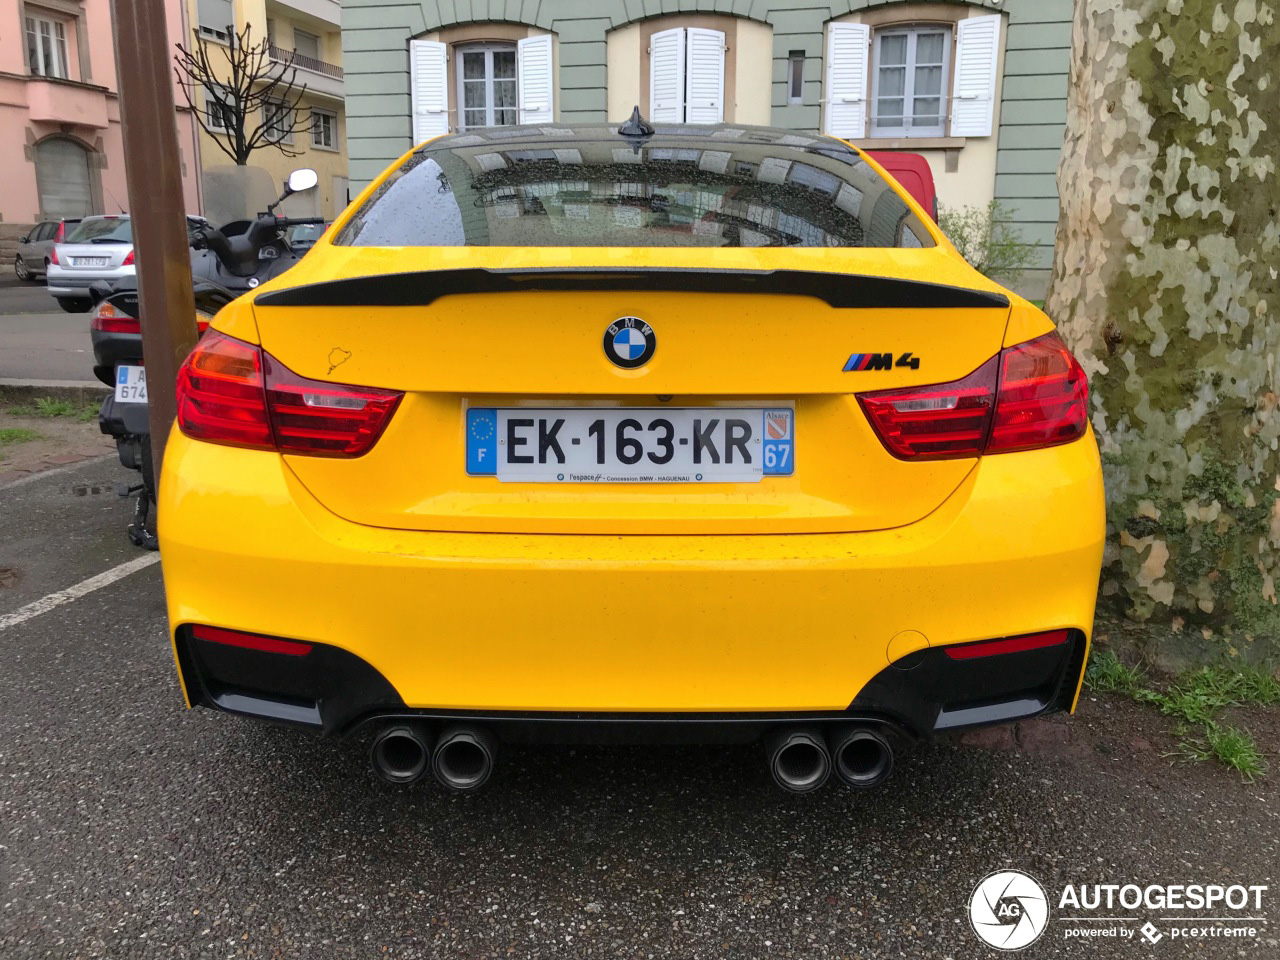 Gele BMW M4 is lekker aangekleed